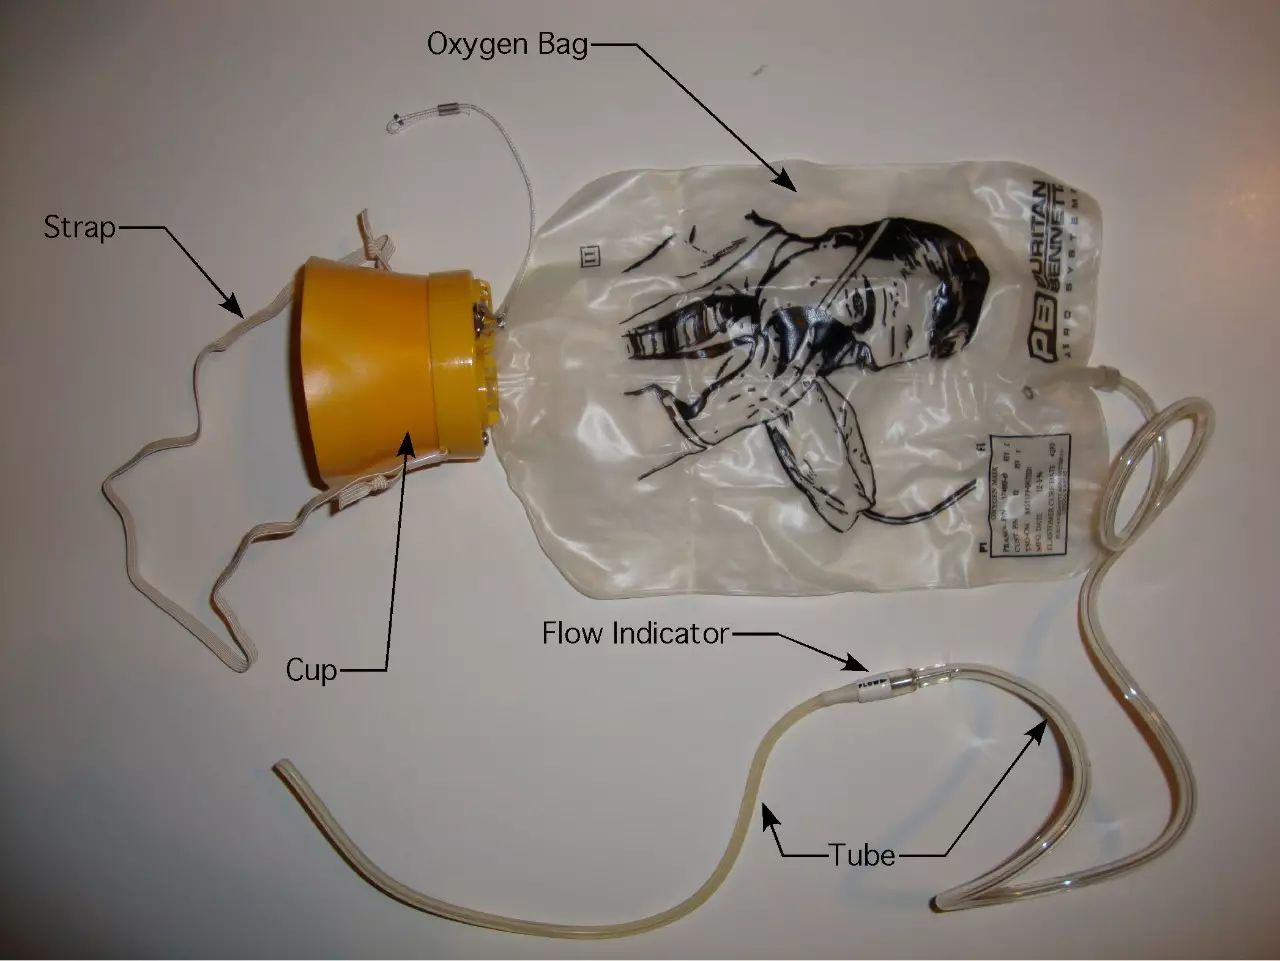 氧气面罩与化学氧气发生器之间系着一根细绳,向下拉面罩就会拉动这根